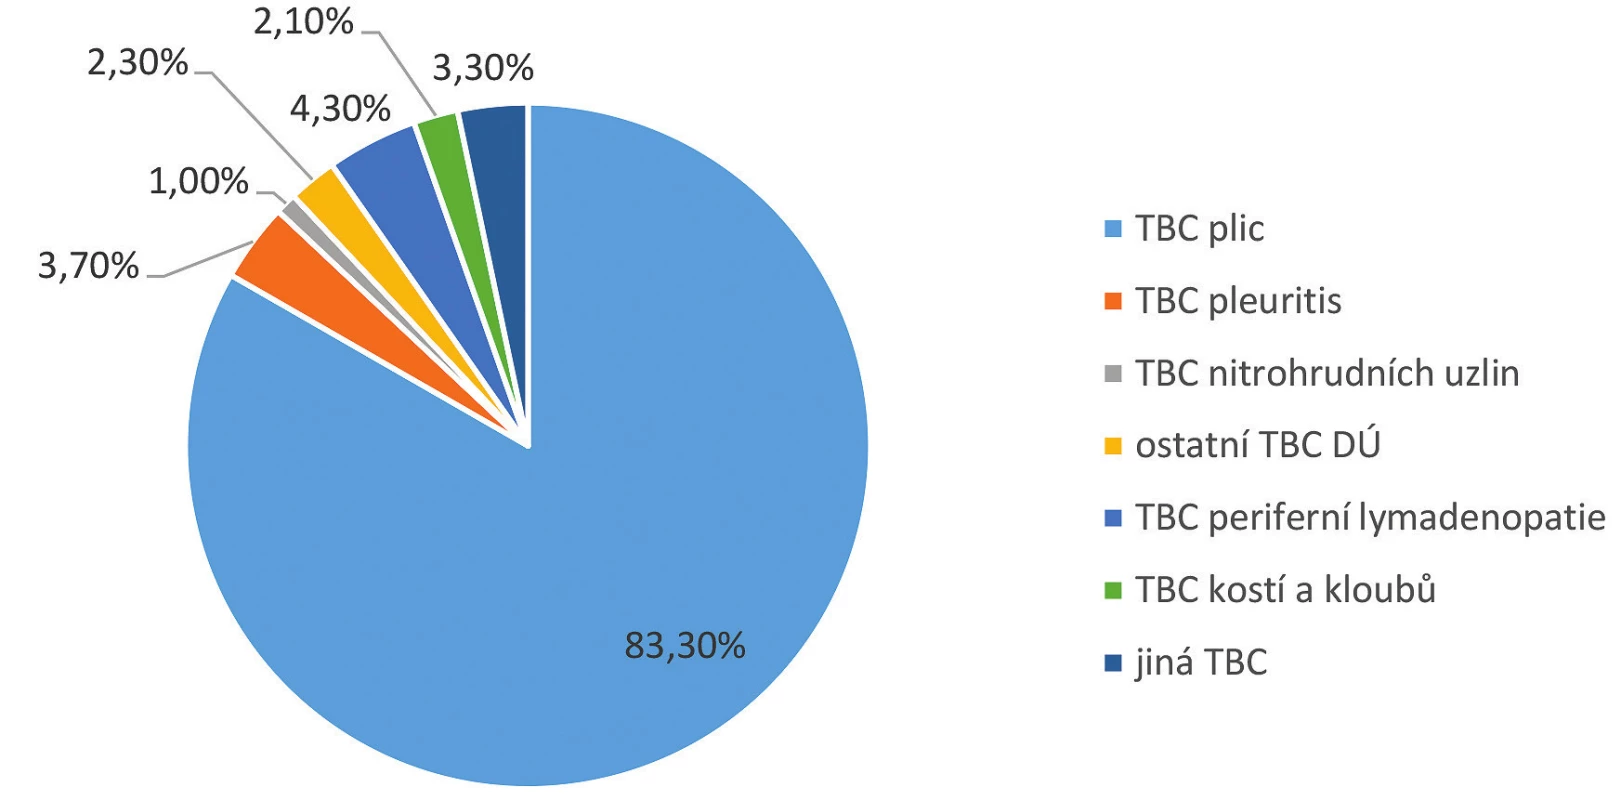 Struktura hlášené TBC podle diagnóz